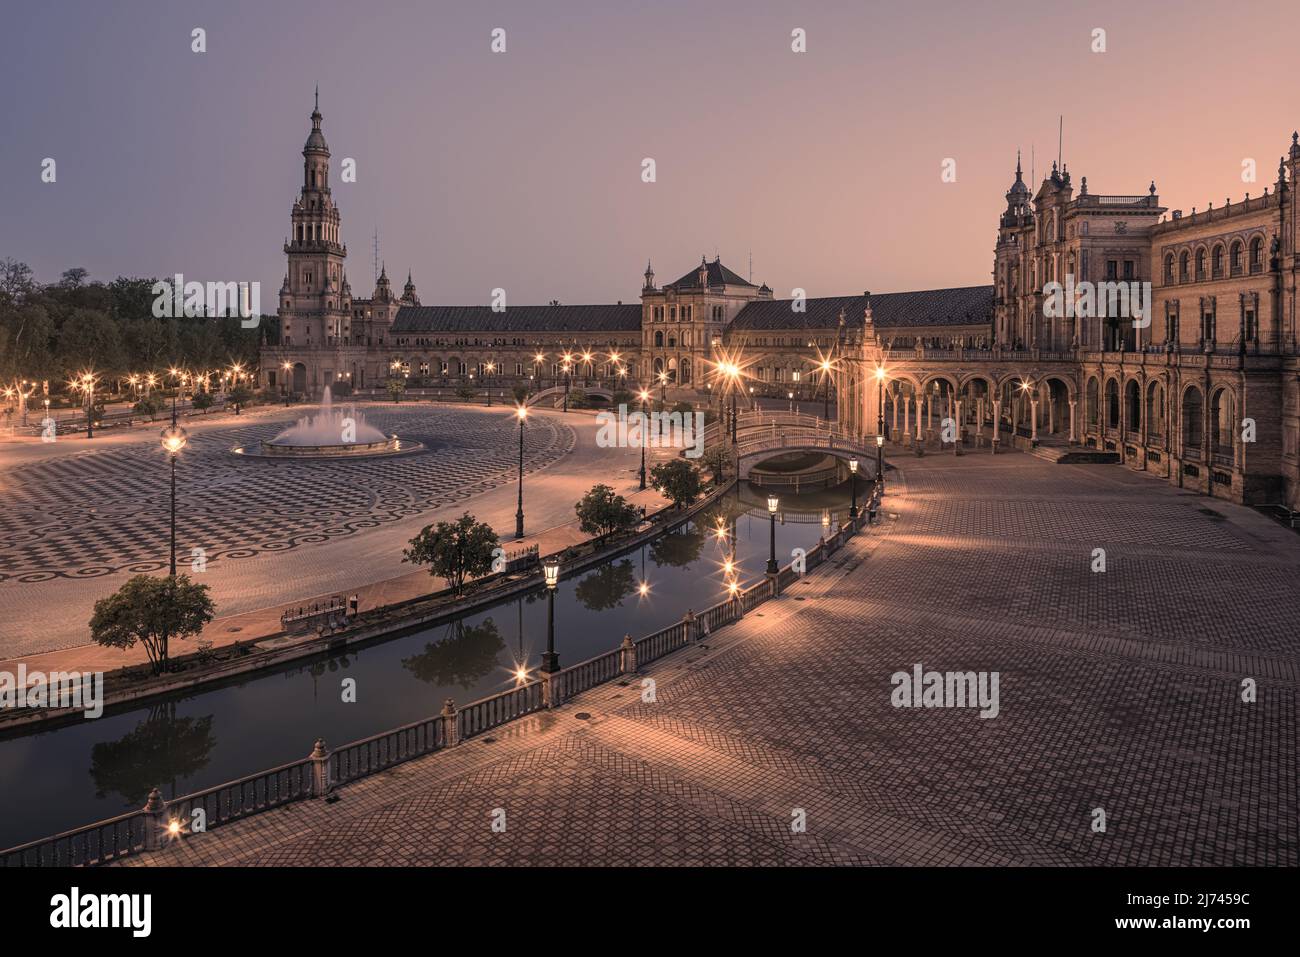 Amanecer en la Plaza de España, una de las plazas más famosas de Sevilla. En honor a la Exposición Iberoamericana de 1929, se erigían varios edificios Foto de stock